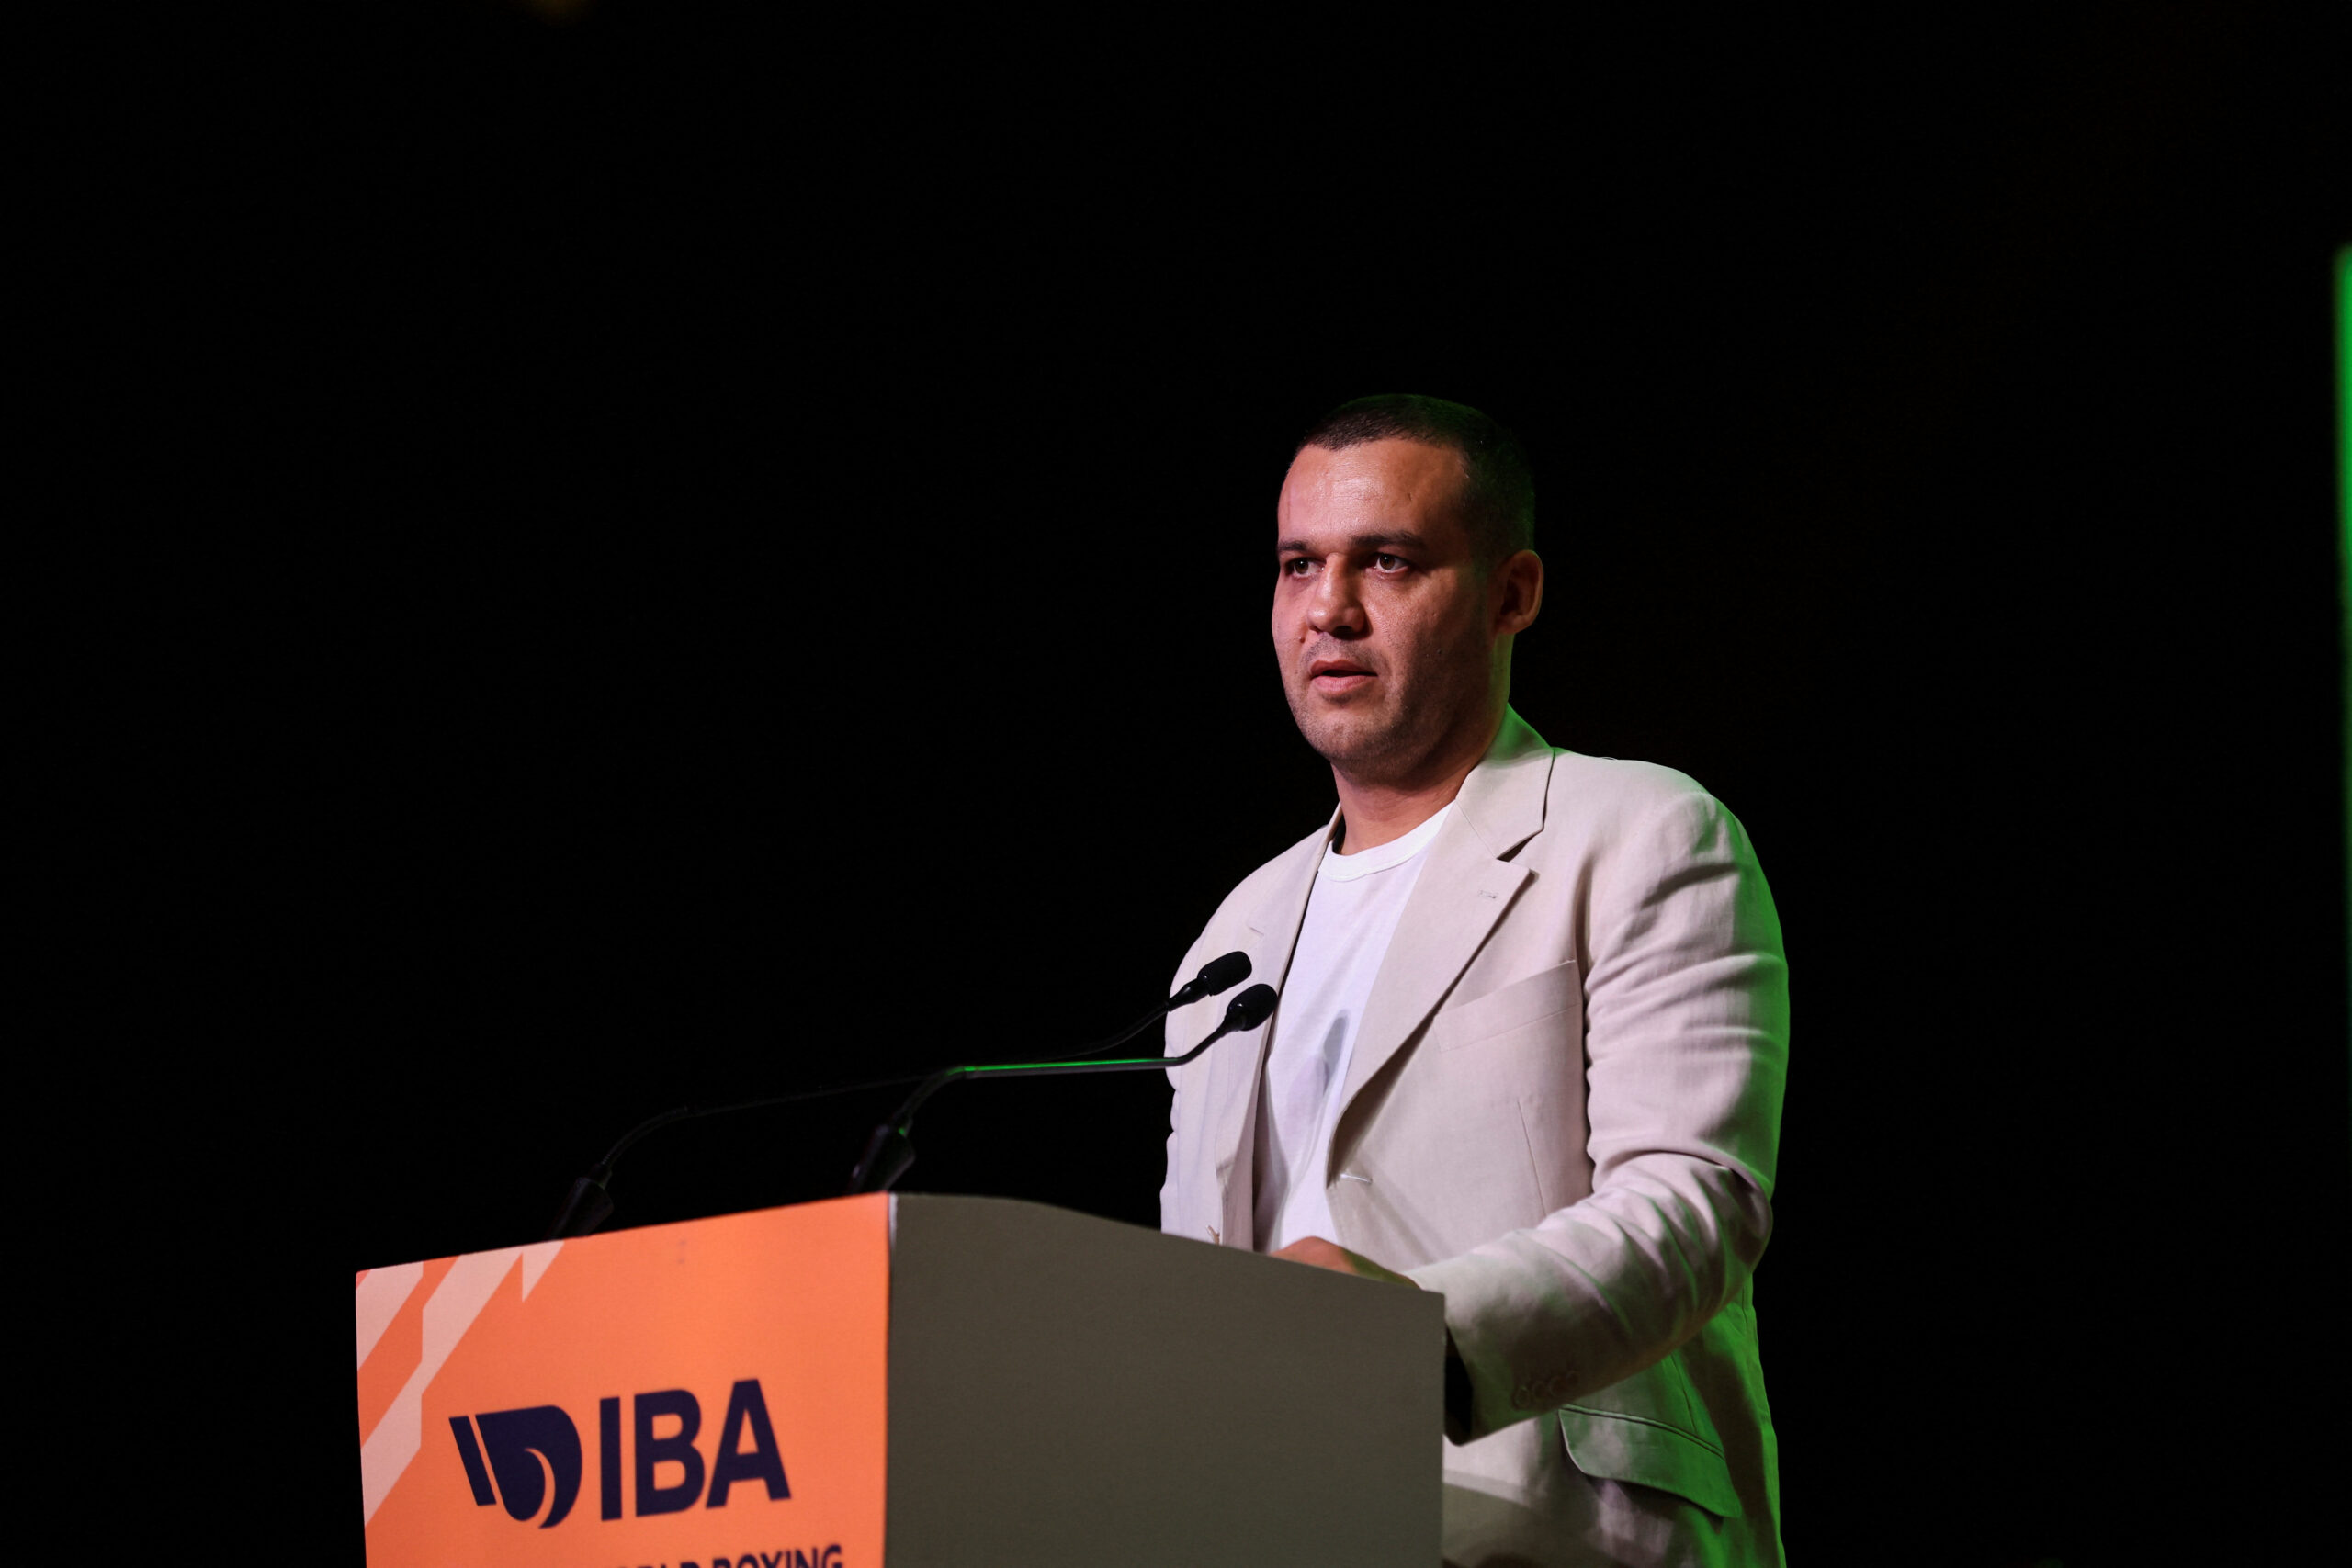 Глава IBA принял участие в церемонии установки памятного знака в честь основания центра прогресса бокса в Уфе